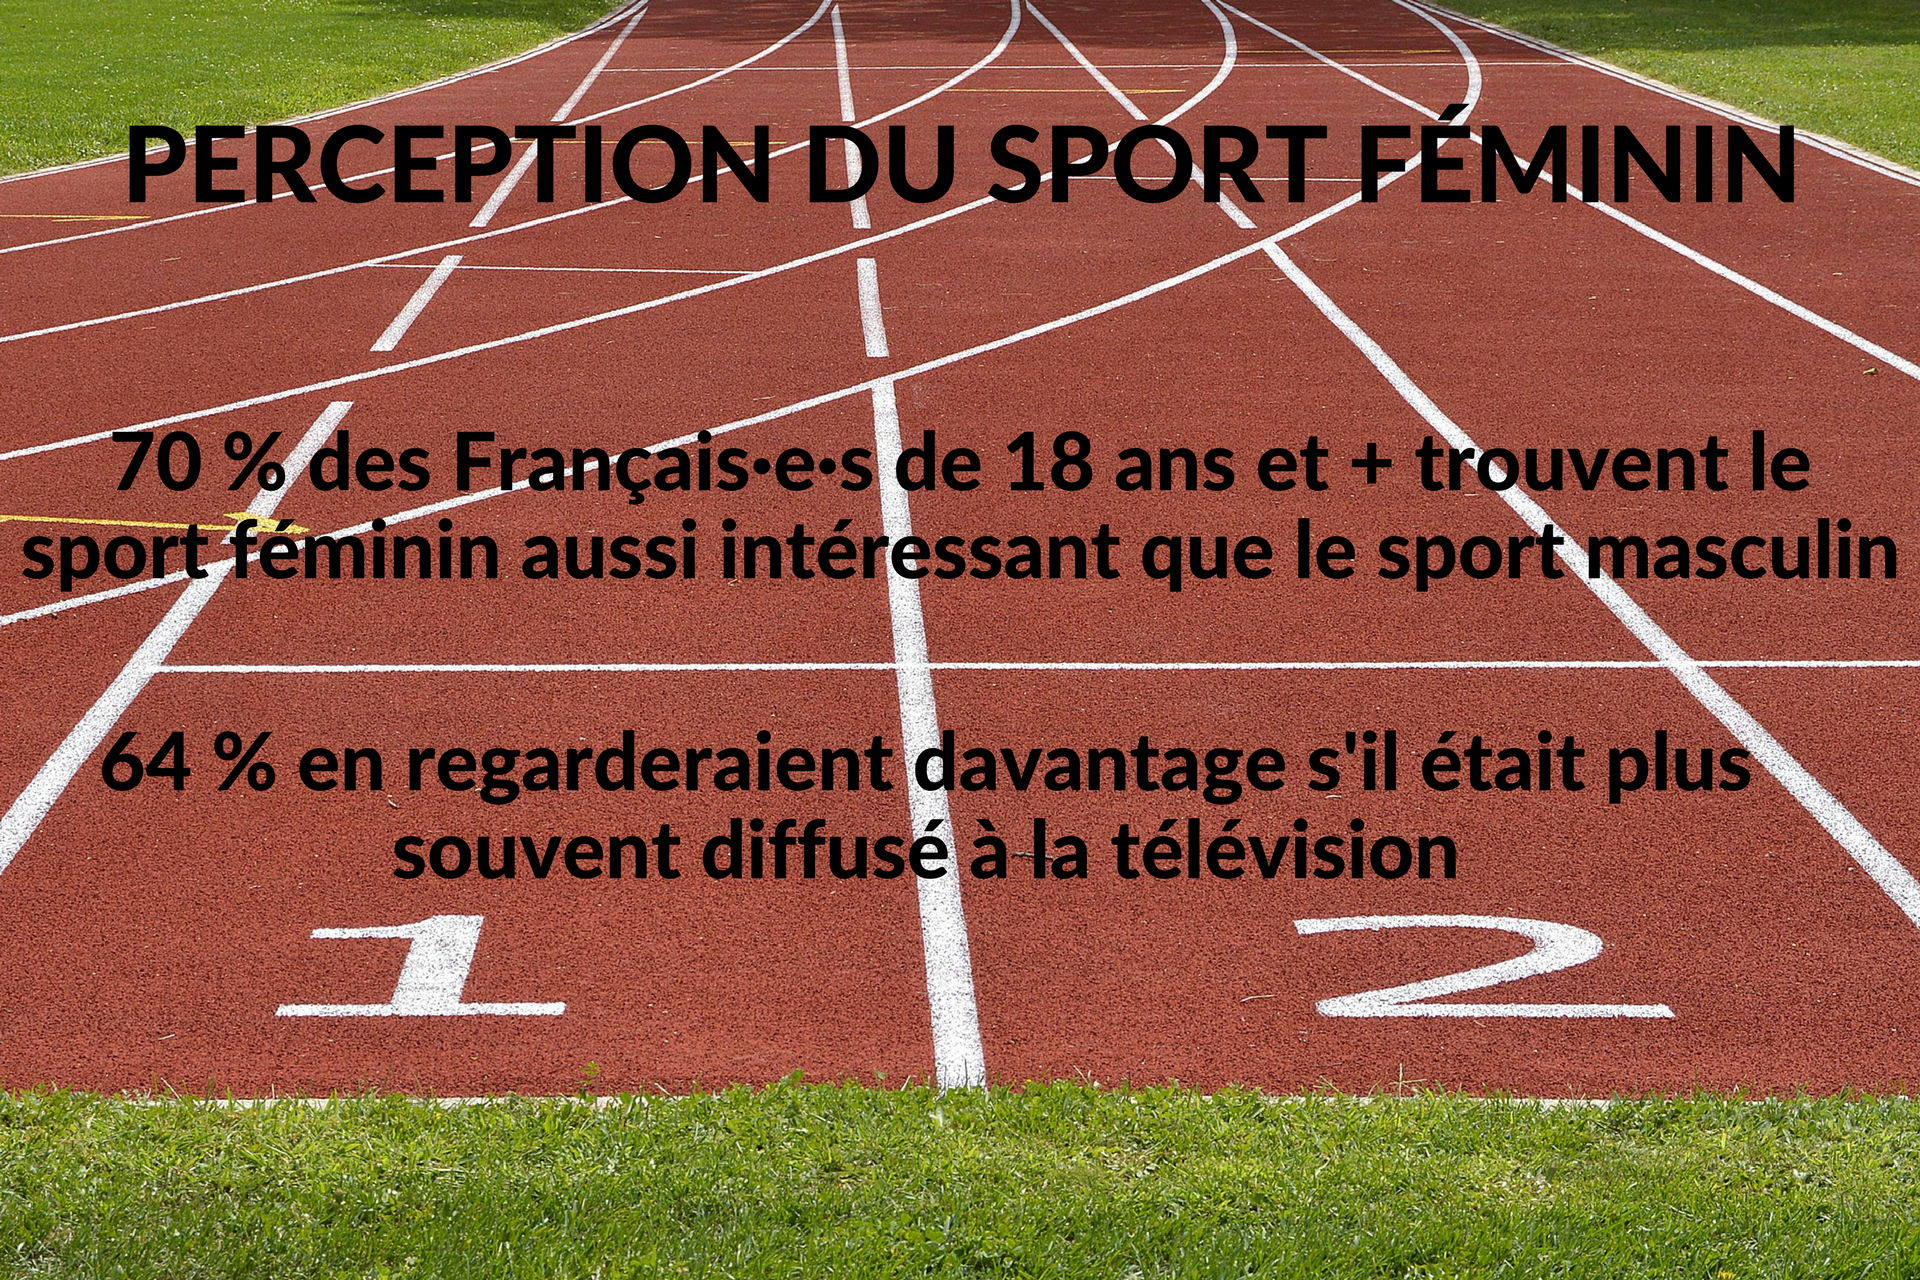 Infographie : perception du sport féminin par les Français : 70 % des + de 18 ans sont autant intéressés par le sport féminin que masculin